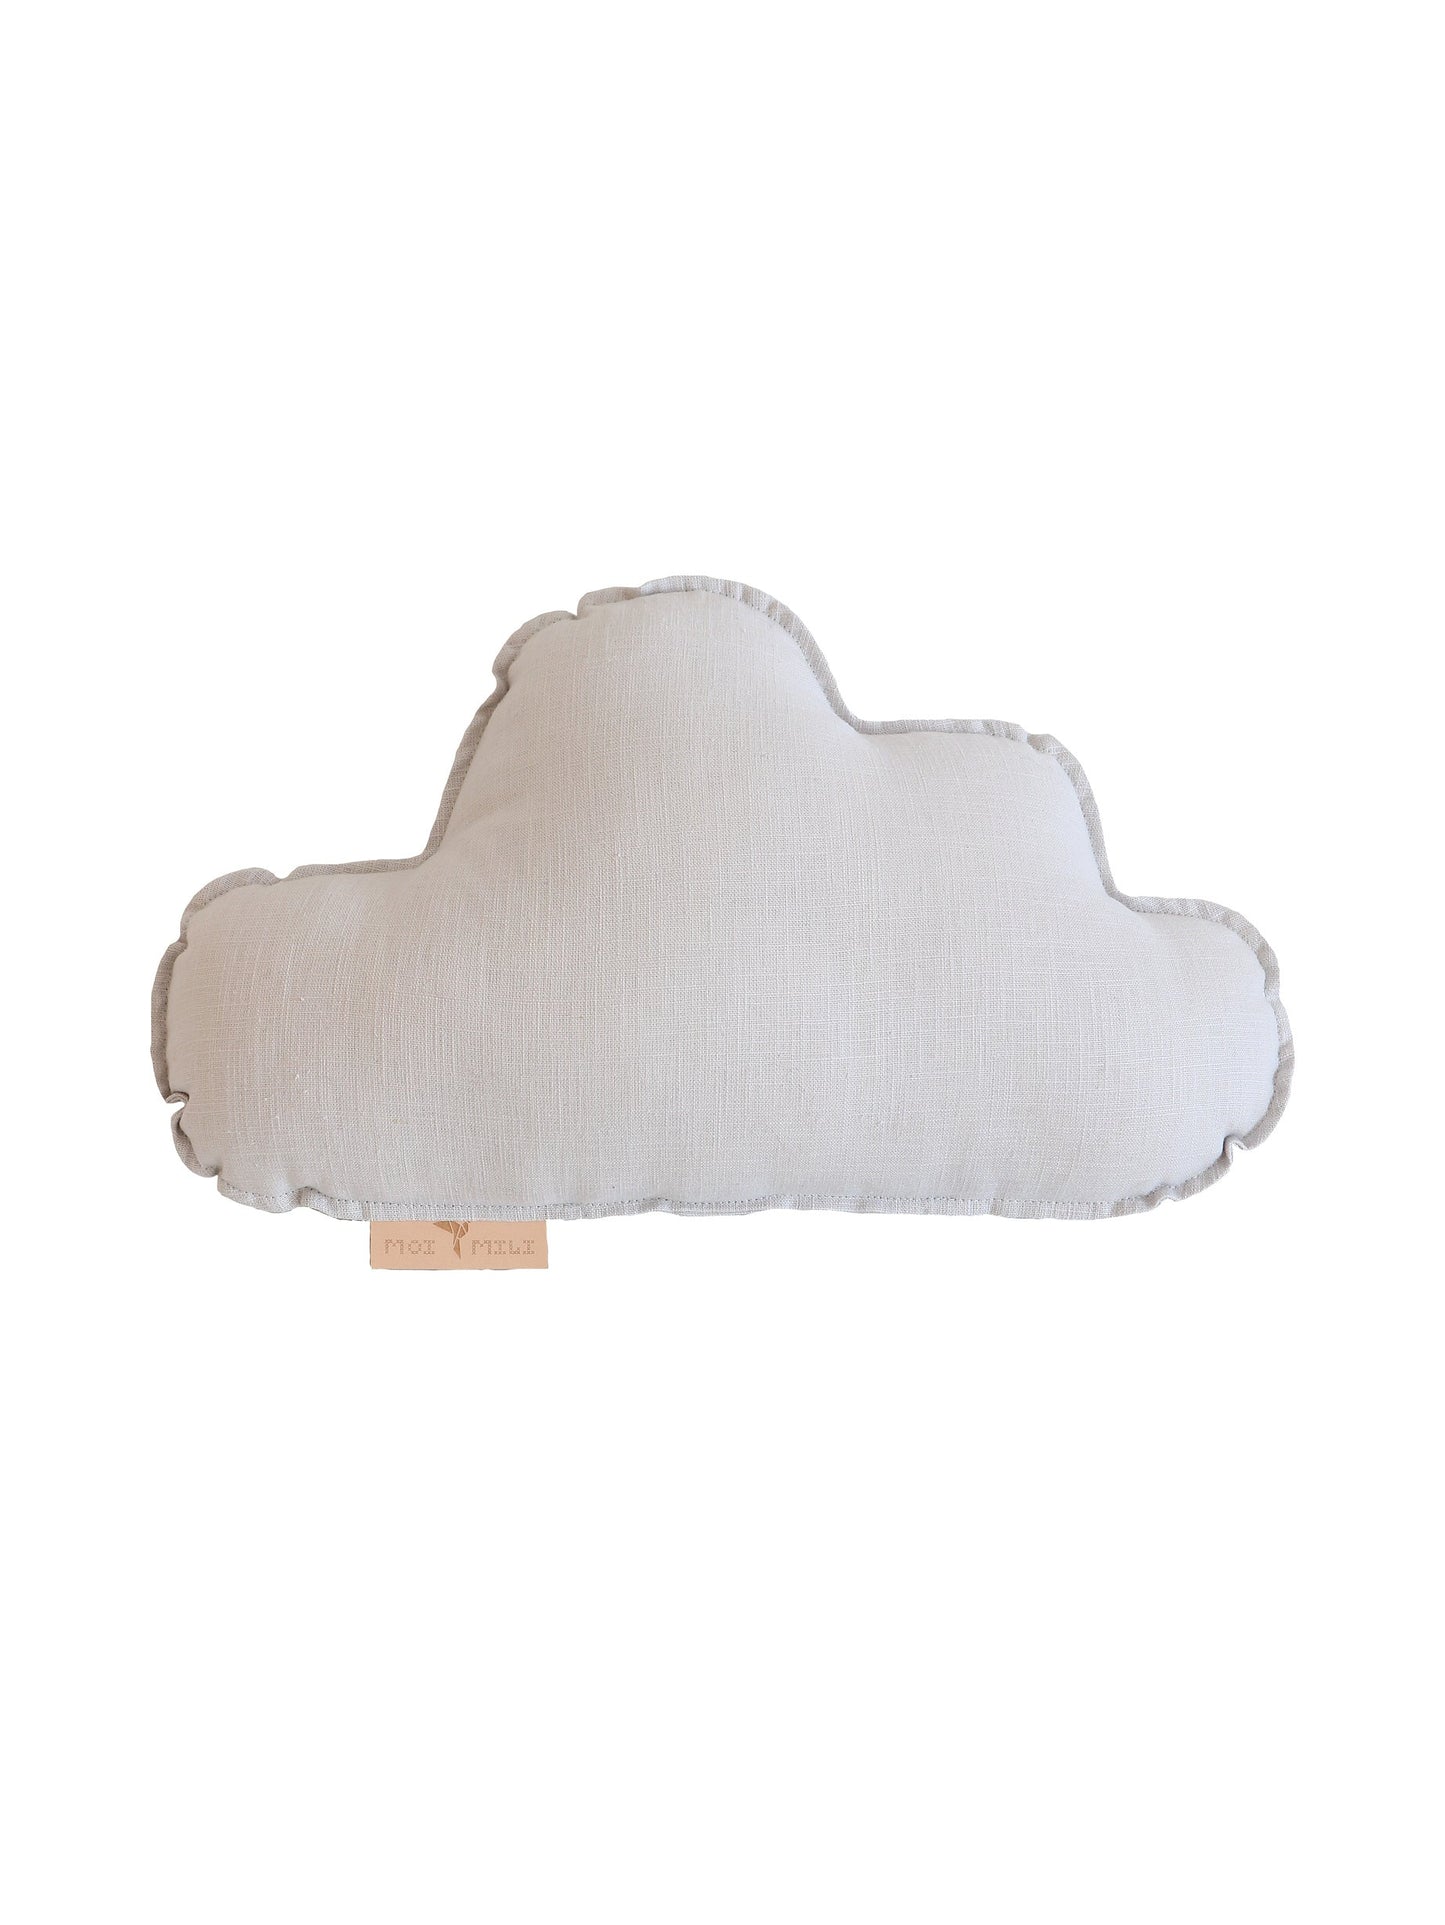 Linen “Pigeon Grey” Cloud Pillow